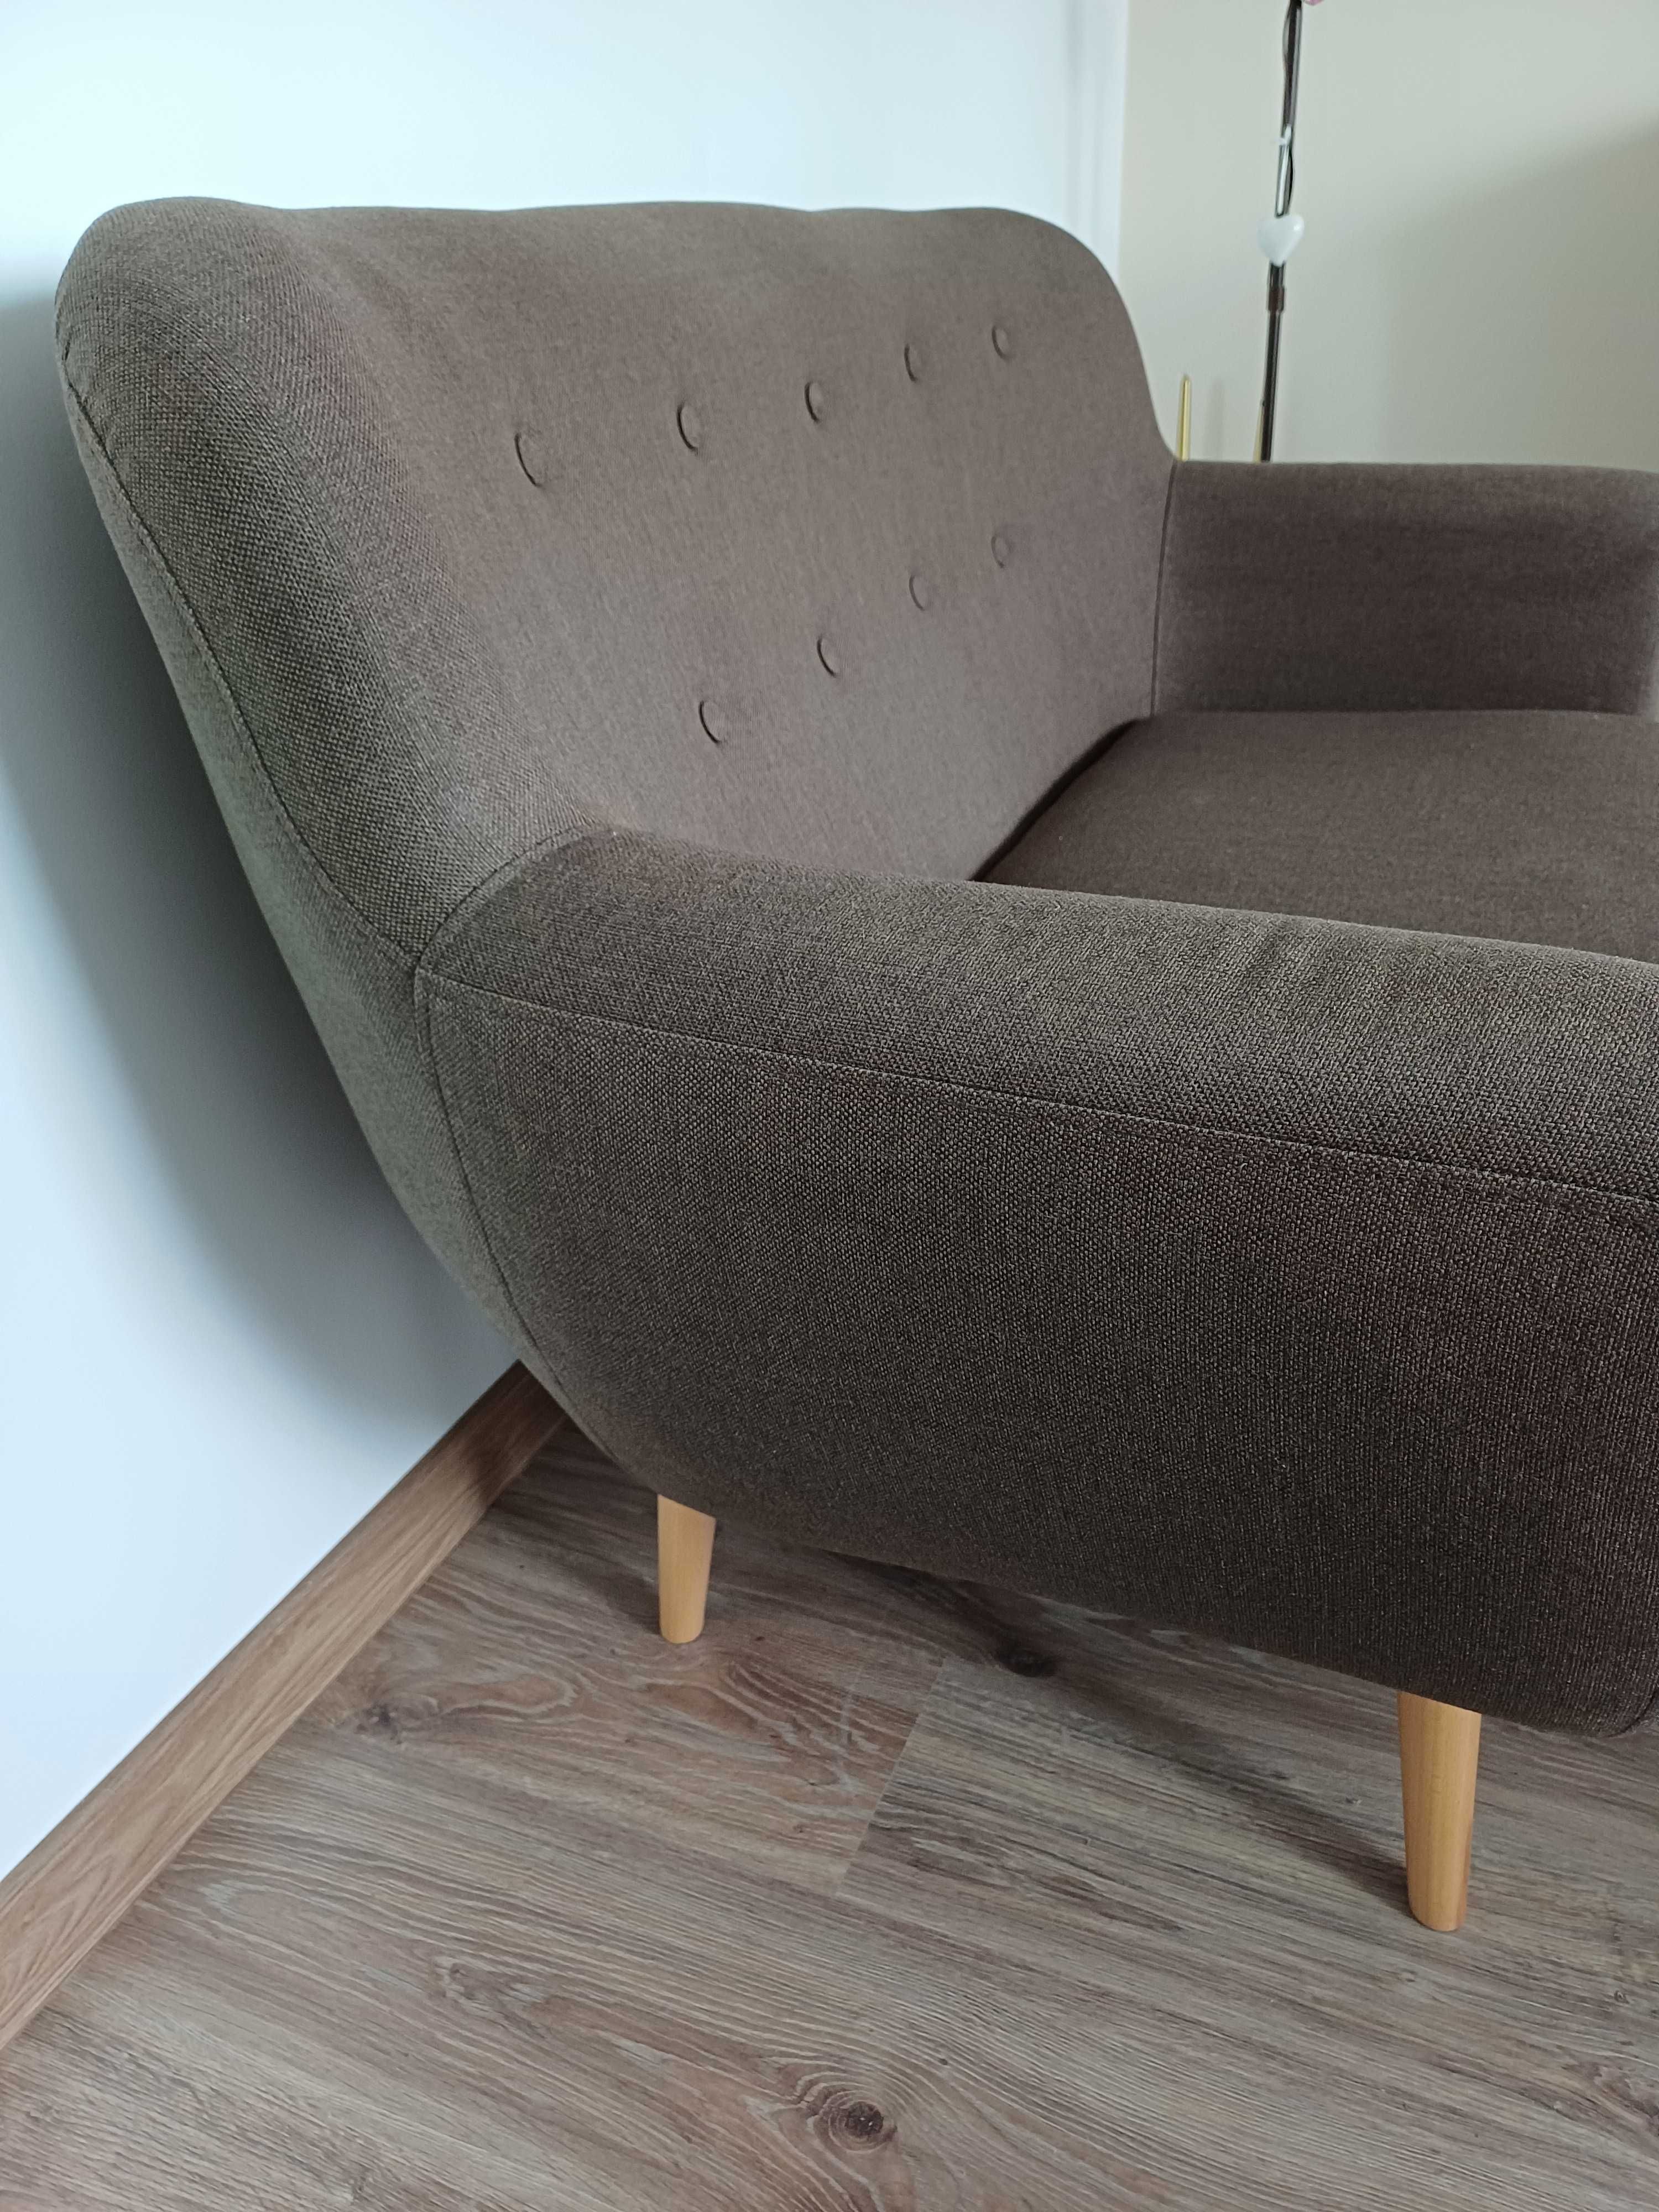 Sofa dwuosobowa, foteliki 2 szt. + stolik komplet Tanio